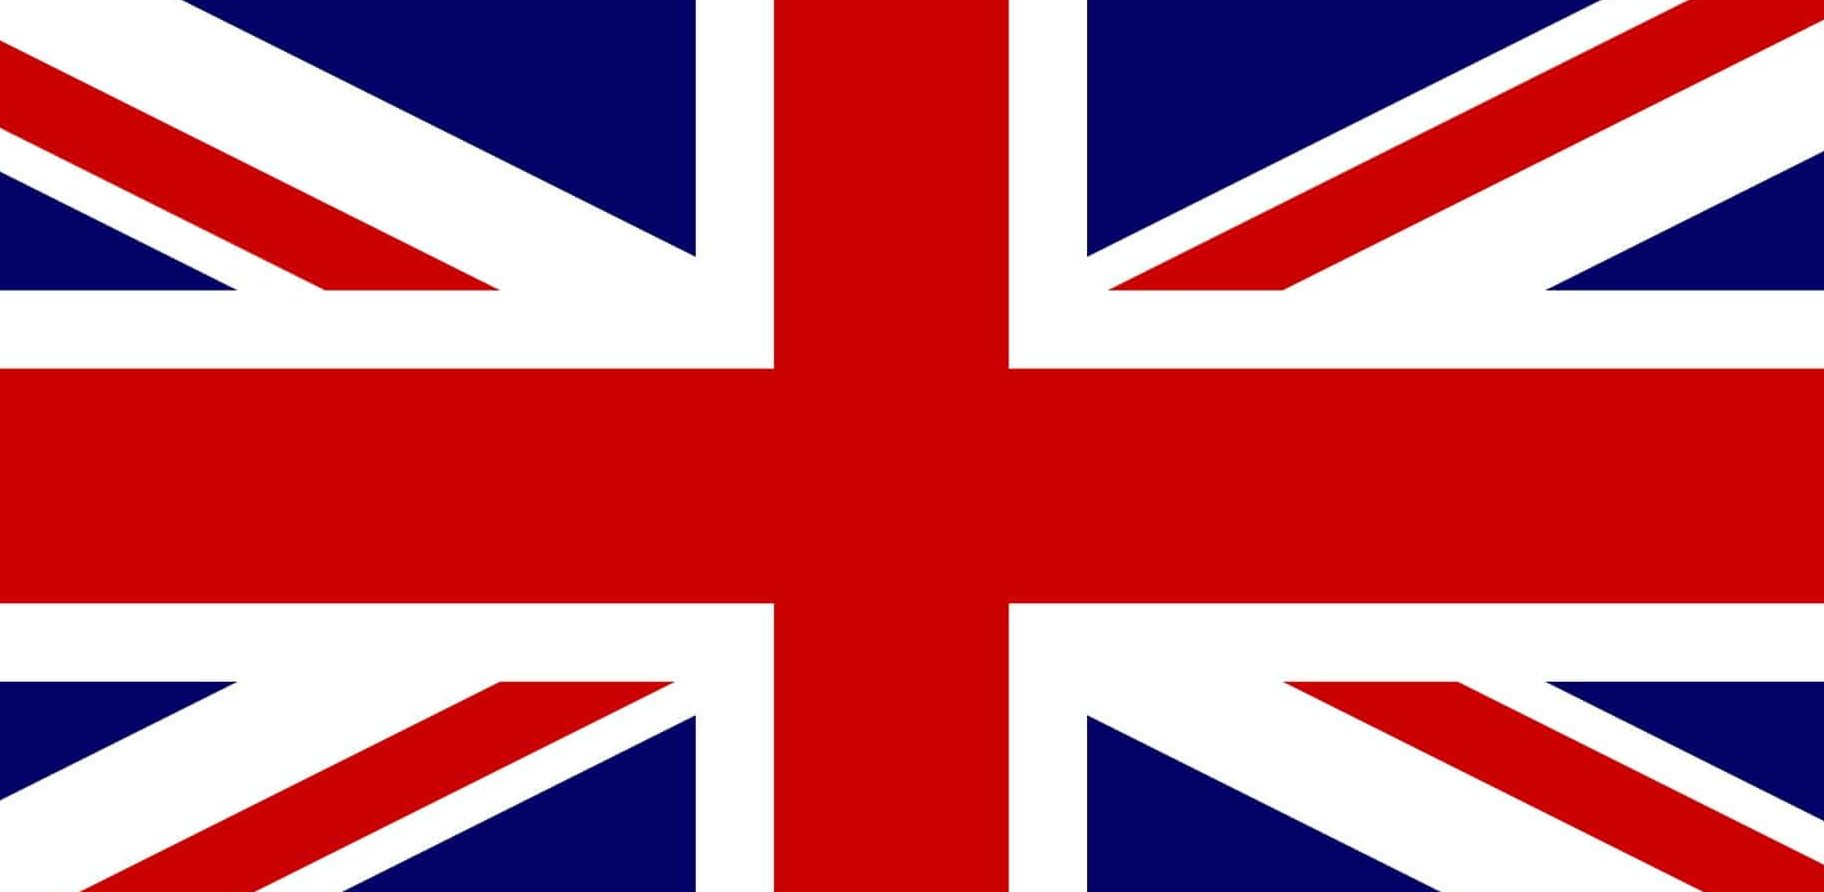 Bandiera britannica - Union Jack Bandiera britannica - Union Jack - Regno Unito